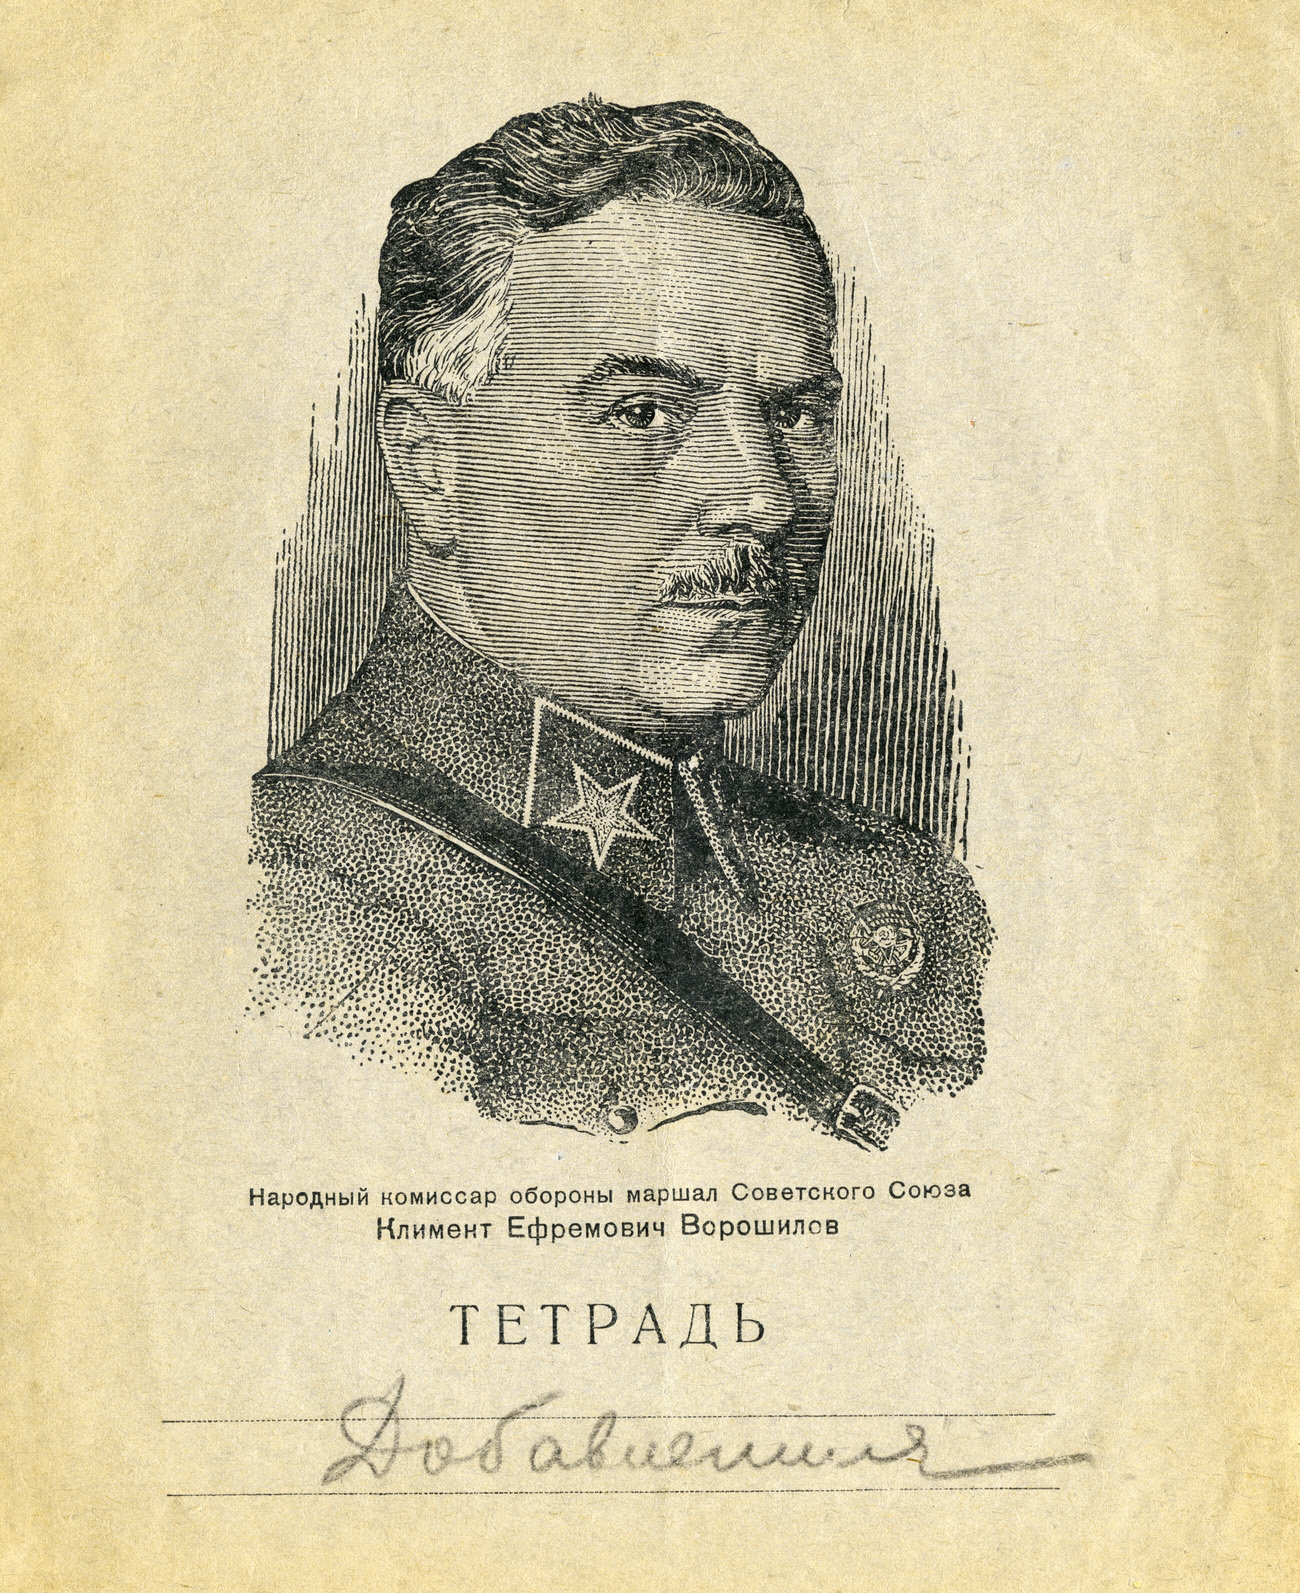 Тетрадь Ворошилов, 1936